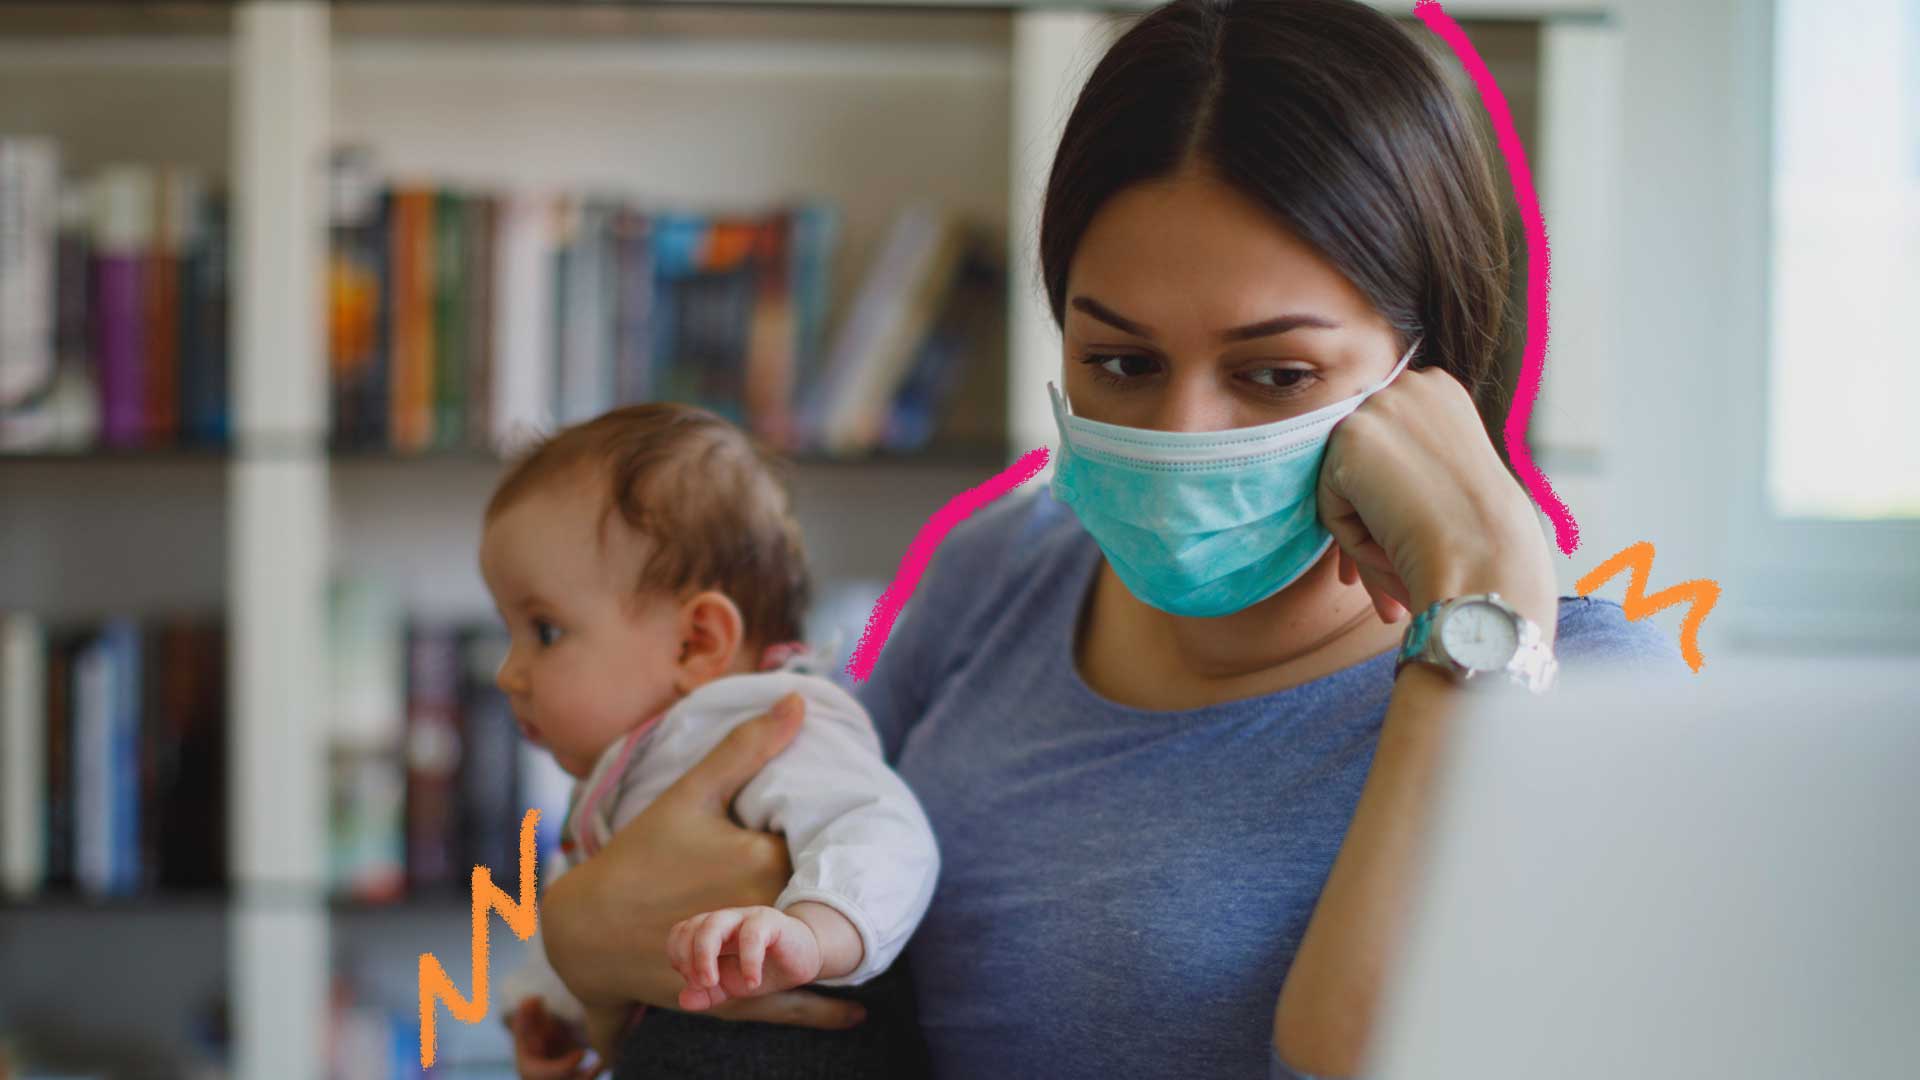 Famílias na pandemia: Uma mãe segura seu bebê no colo. Ela usa máscara. Ao fundo, há uma estante de livros